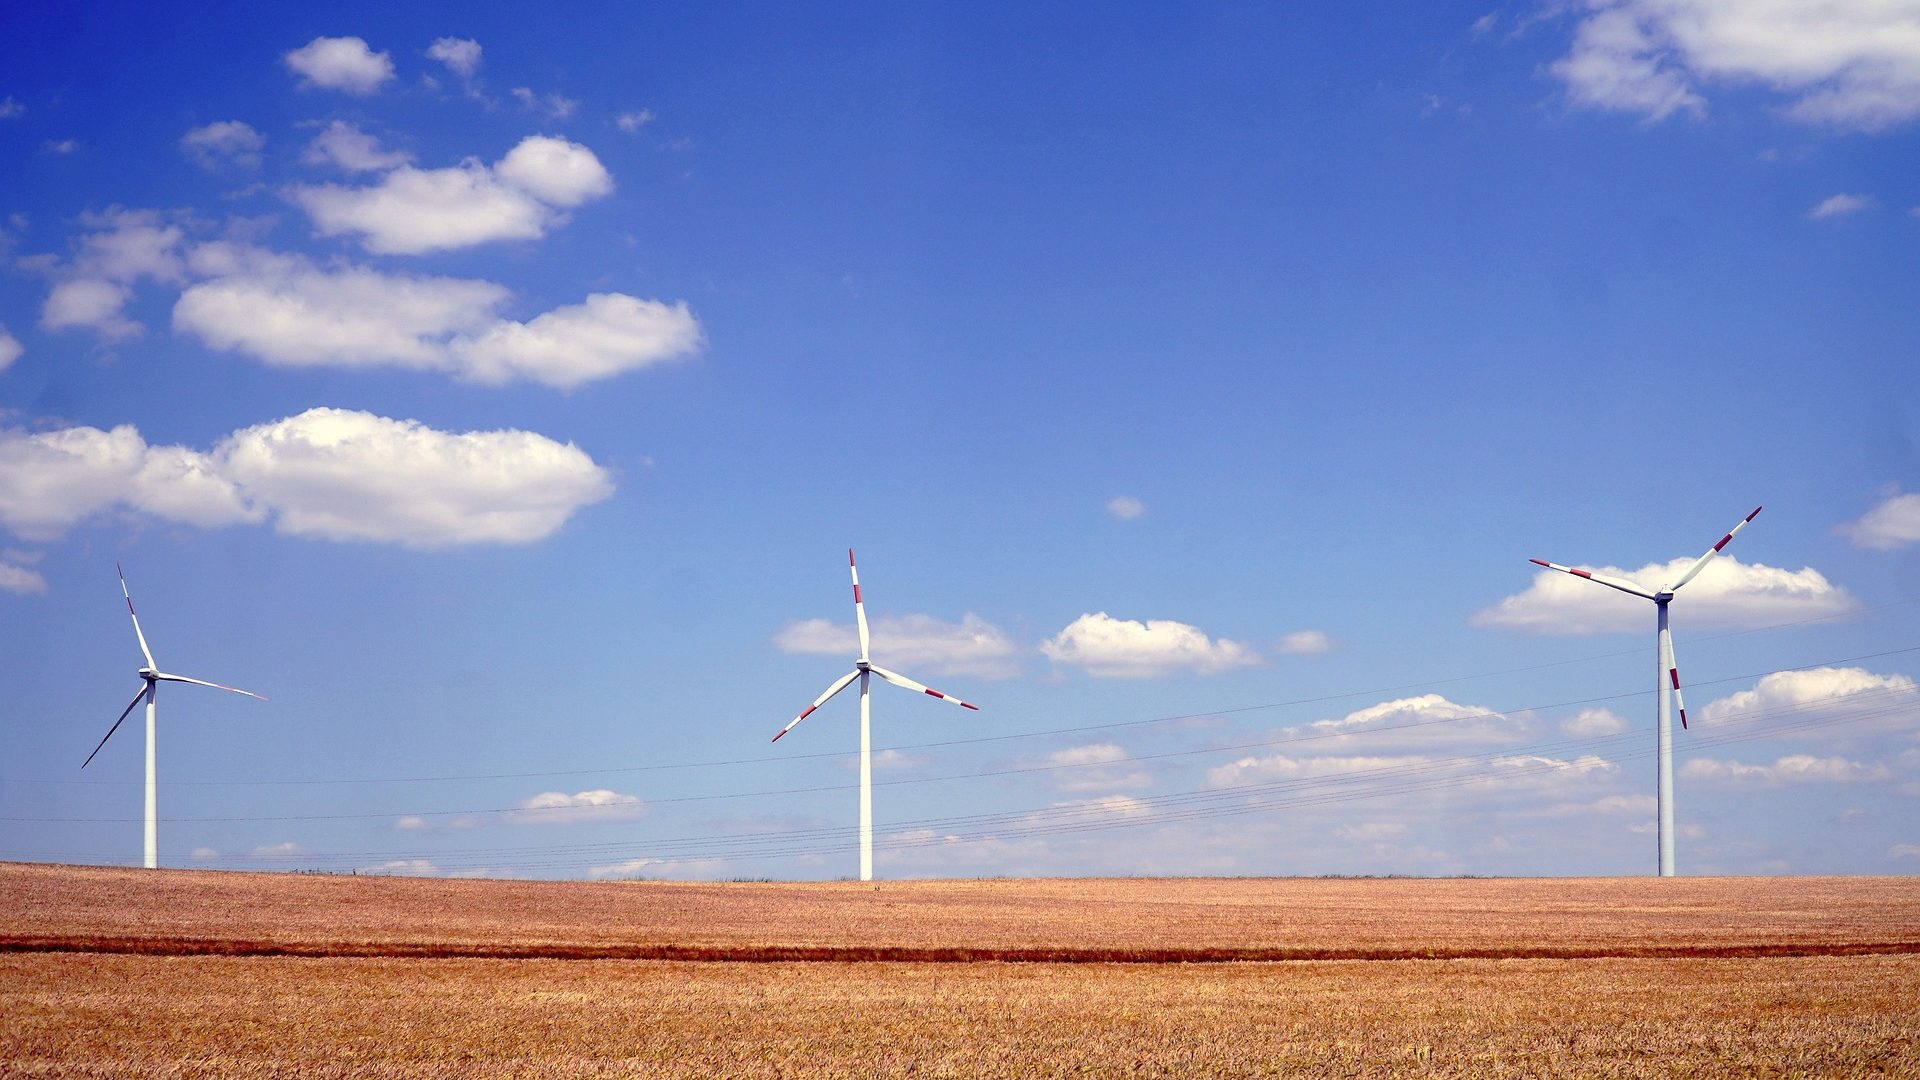 Transição energética justa: mundo precisa triplicar energias renováveis, mas a que custo? Na imagem: Turbinas eólicas para geração onshore (Foto: Matthias Böckel/Pixabay)